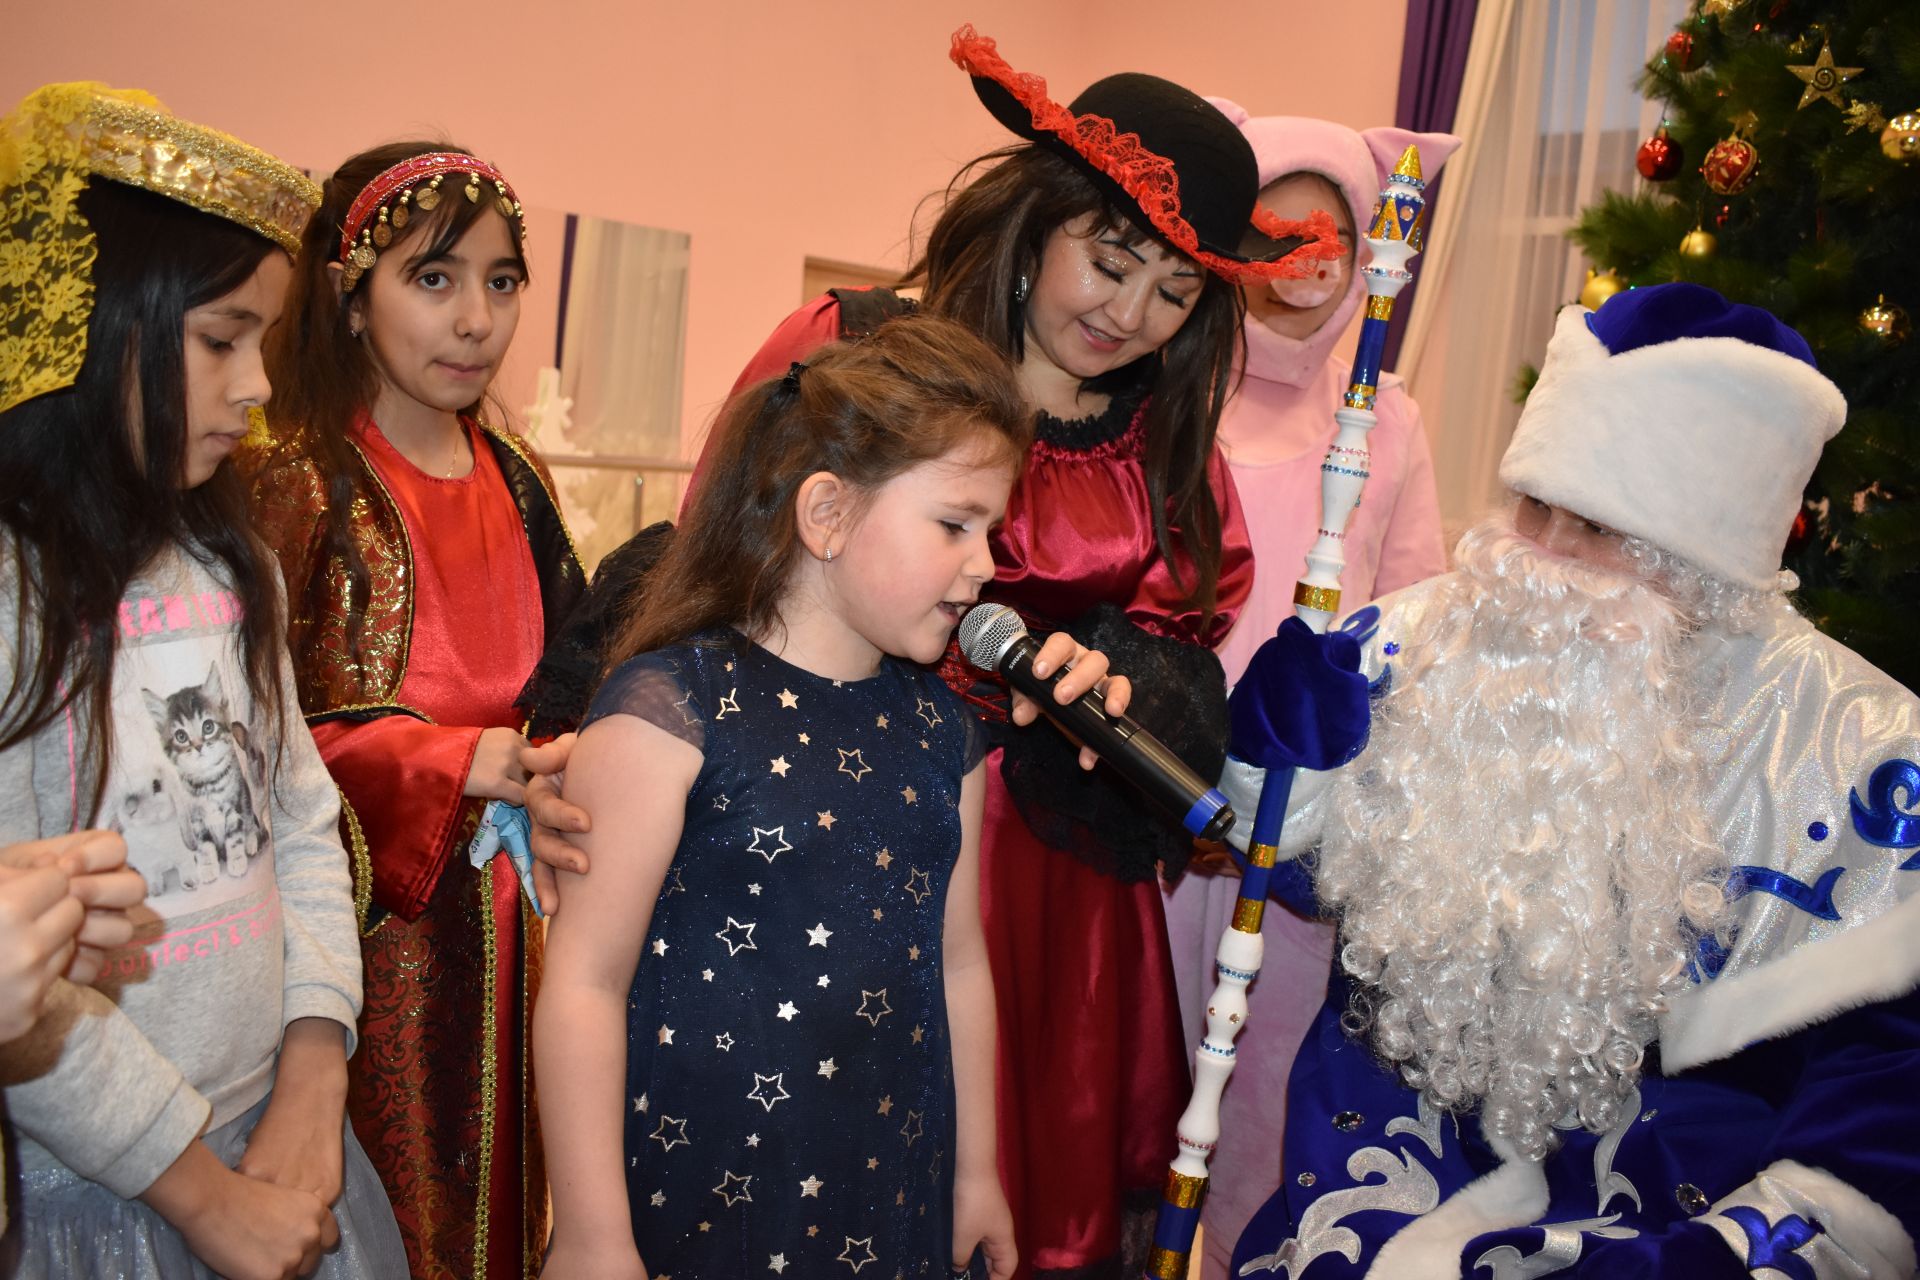 В Доме Дружбы народов г.Азнакаево о состоялся Новогодний праздник для детей мигрантов (ФОТО)